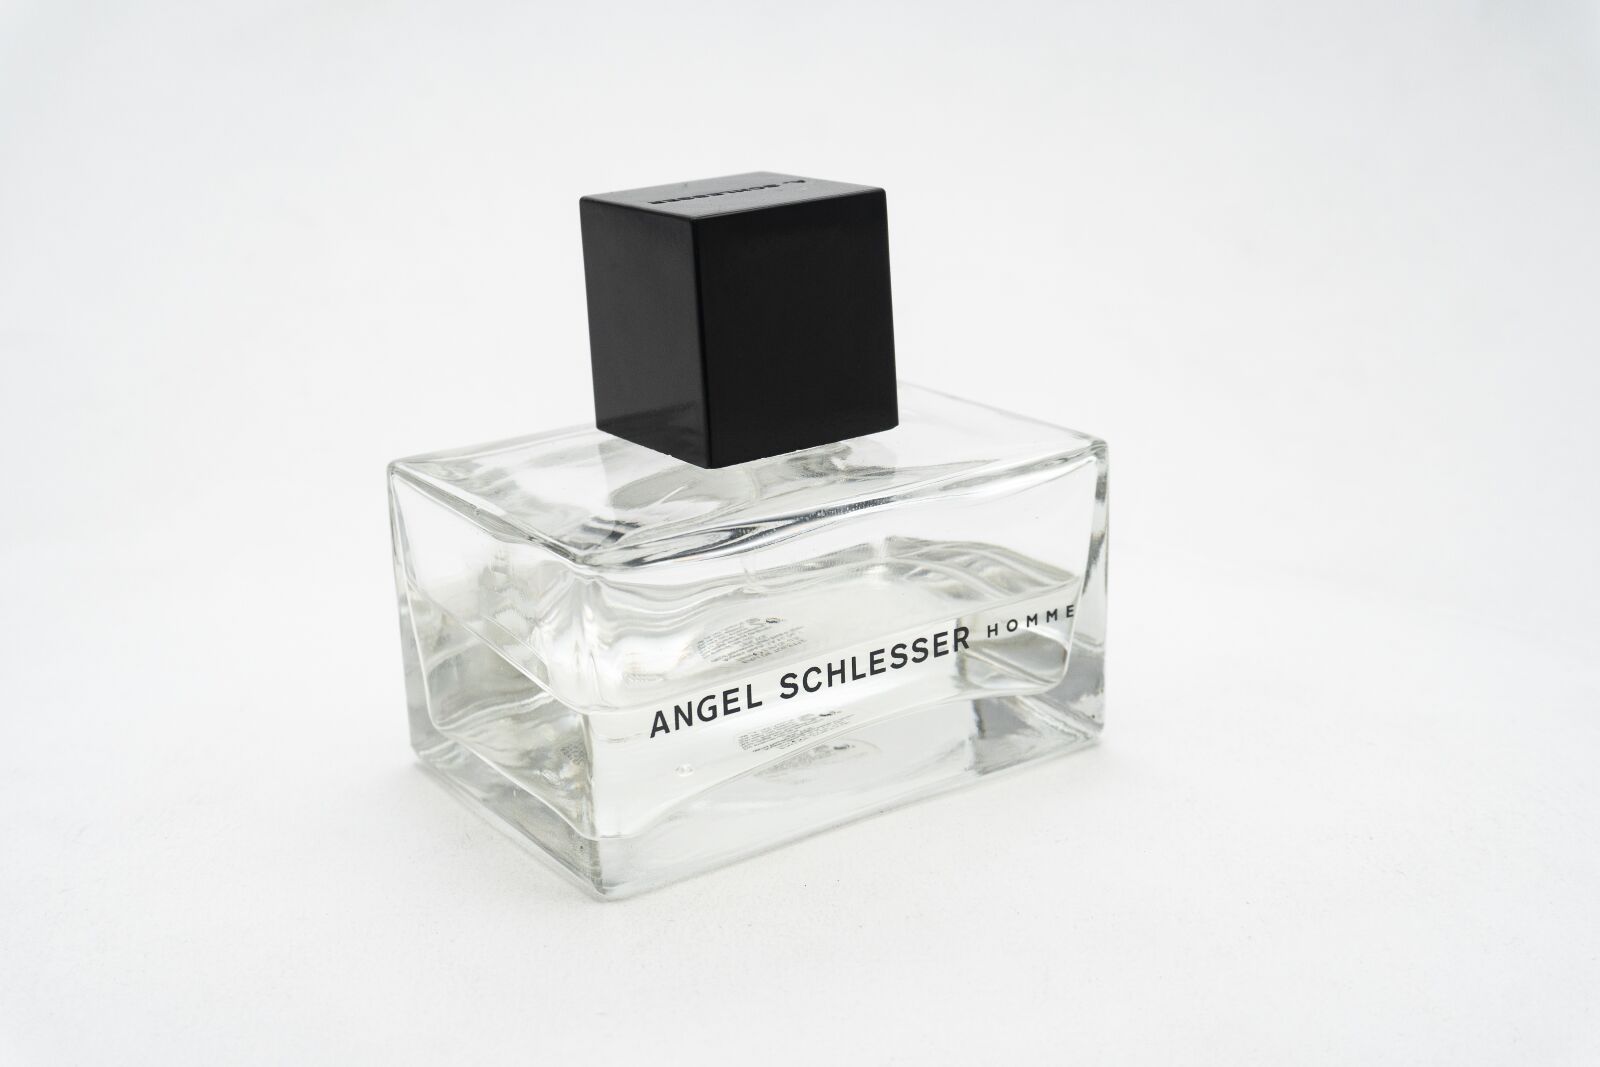 Sony a6300 sample photo. Perfume, eau de cologne photography